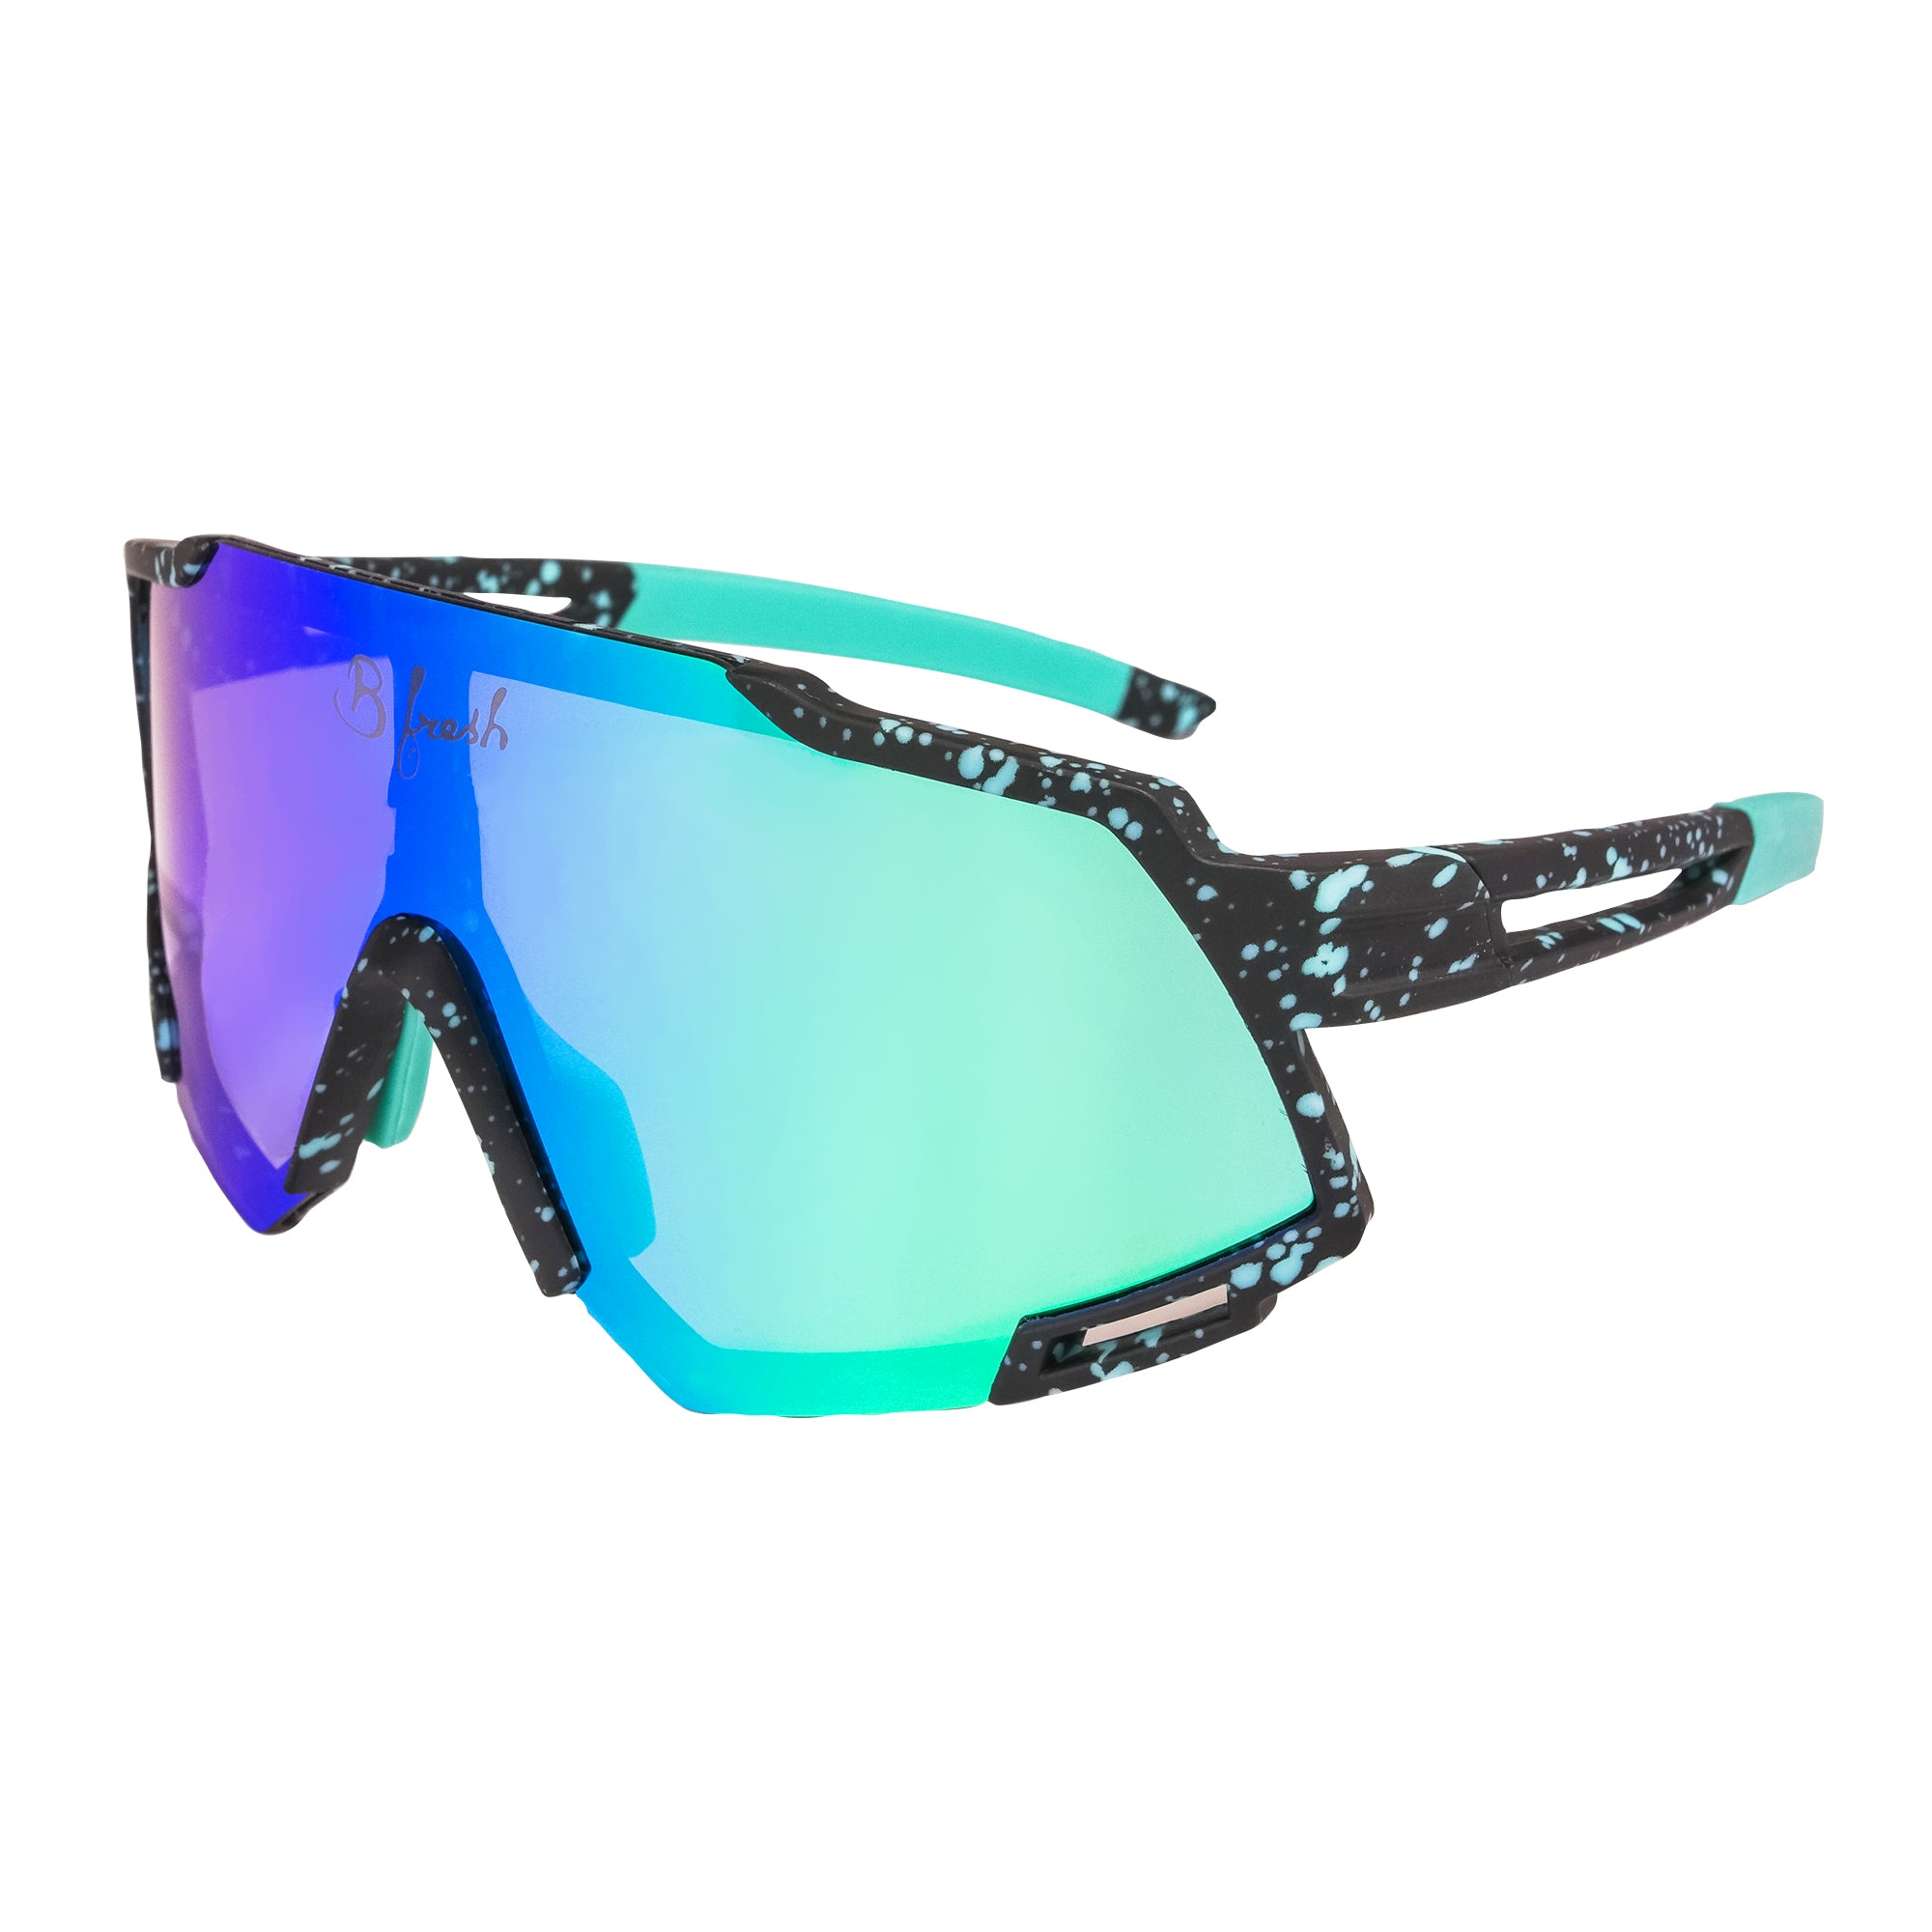 Midnight Snack Retro 80s Sunglasses Interchangeable Lenses Blue Black 90s Splatter Mens Journal Performance Eyewear Polarized UV400. B Fresh Gear.